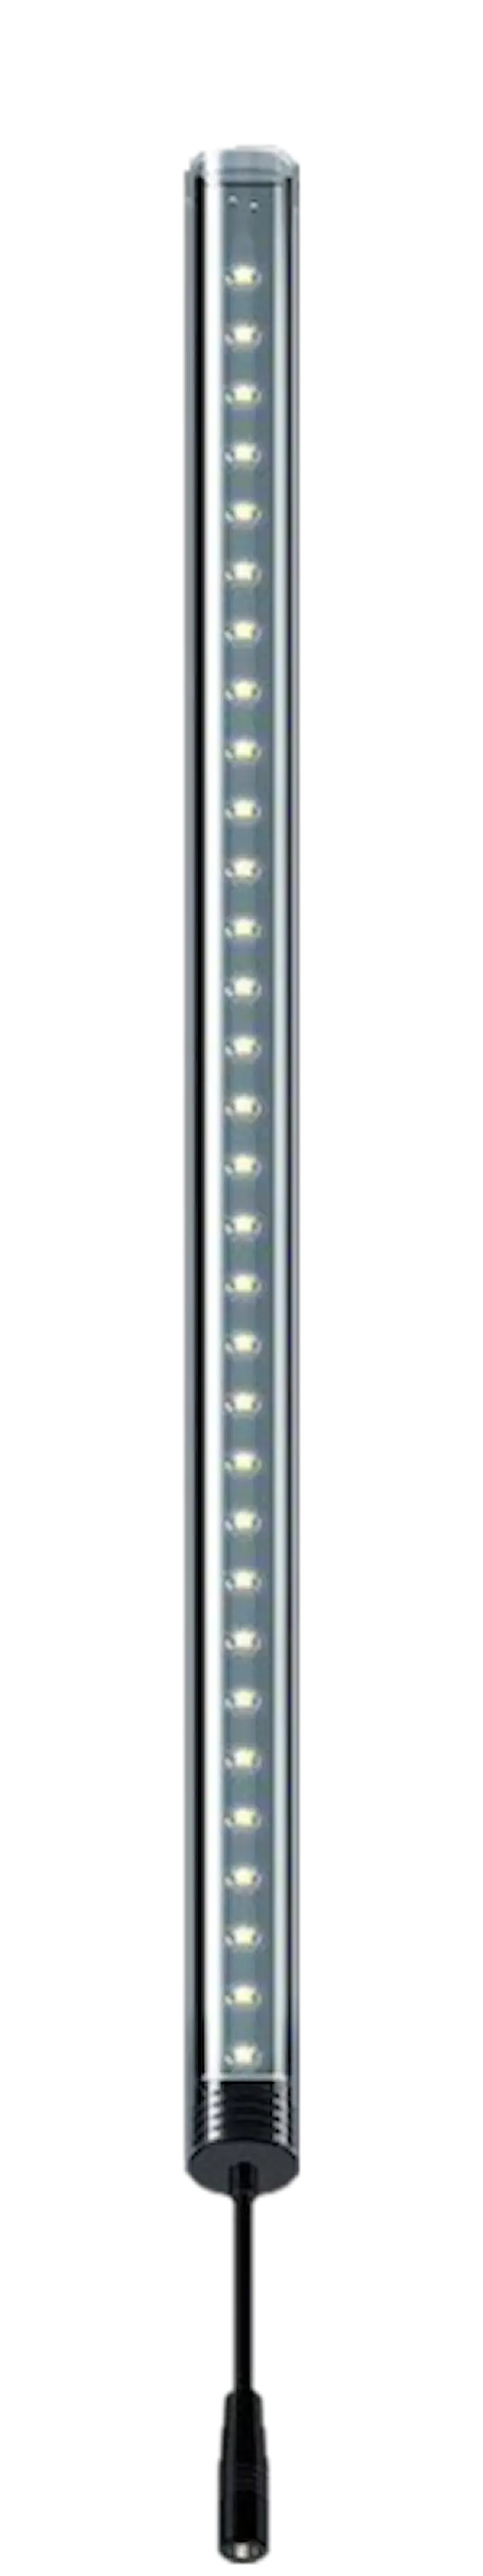 LightWave LED Complete Set, 1140 - 1220 mm